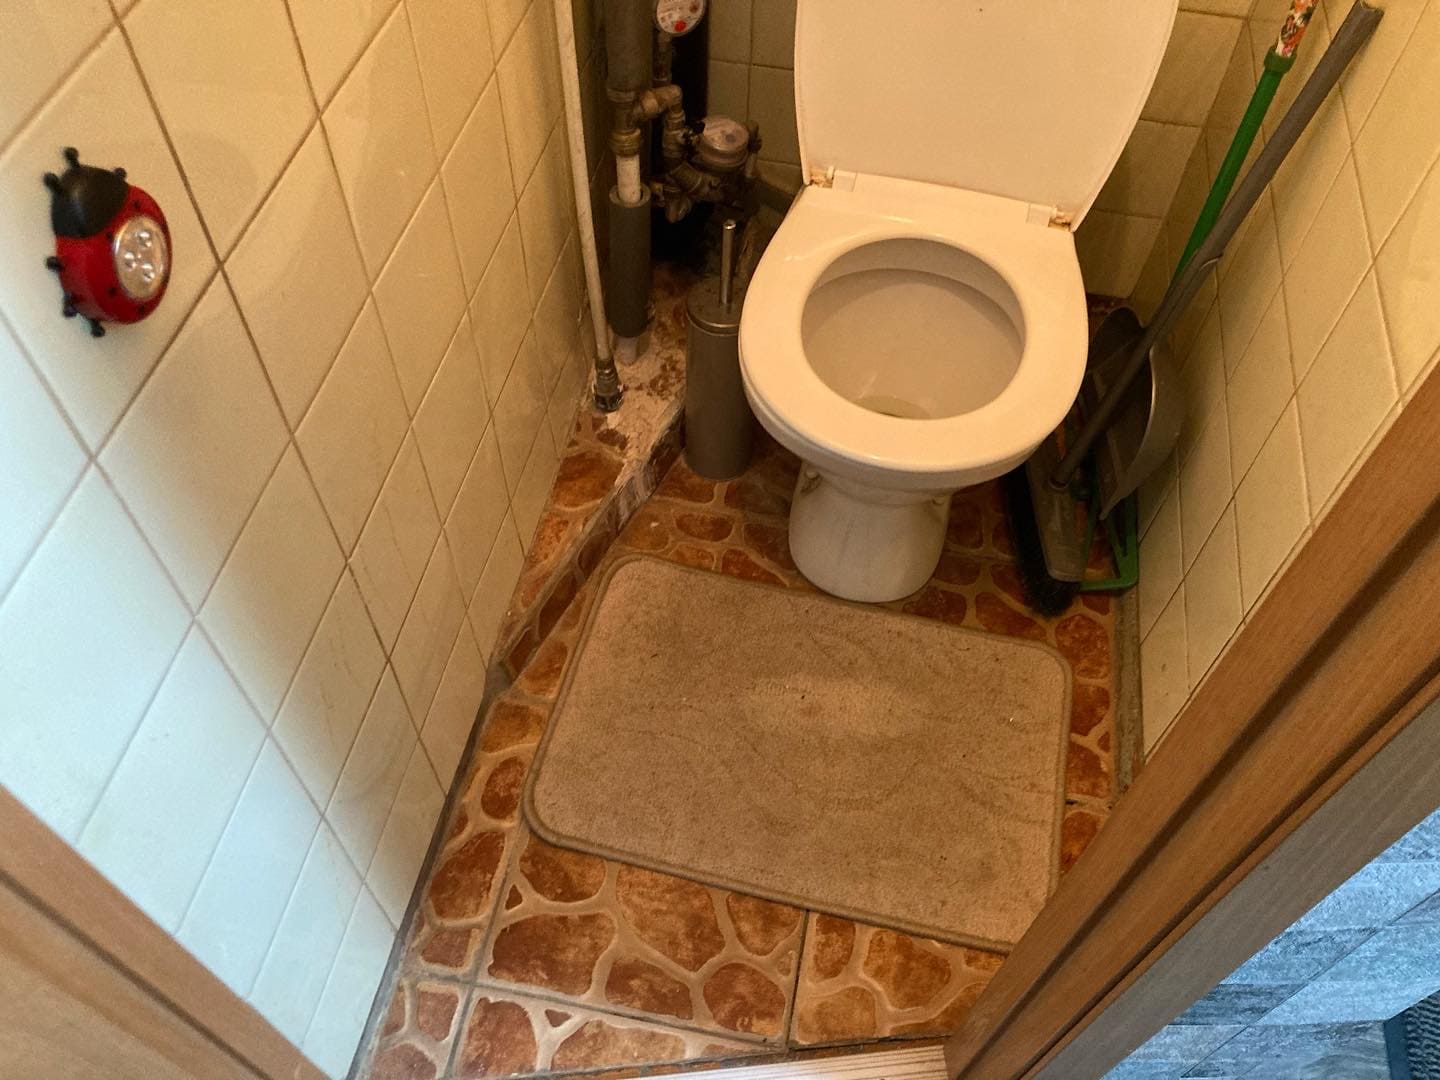 Ремонт туалета, стоимость 50 000 рублей – фото до проведения работ